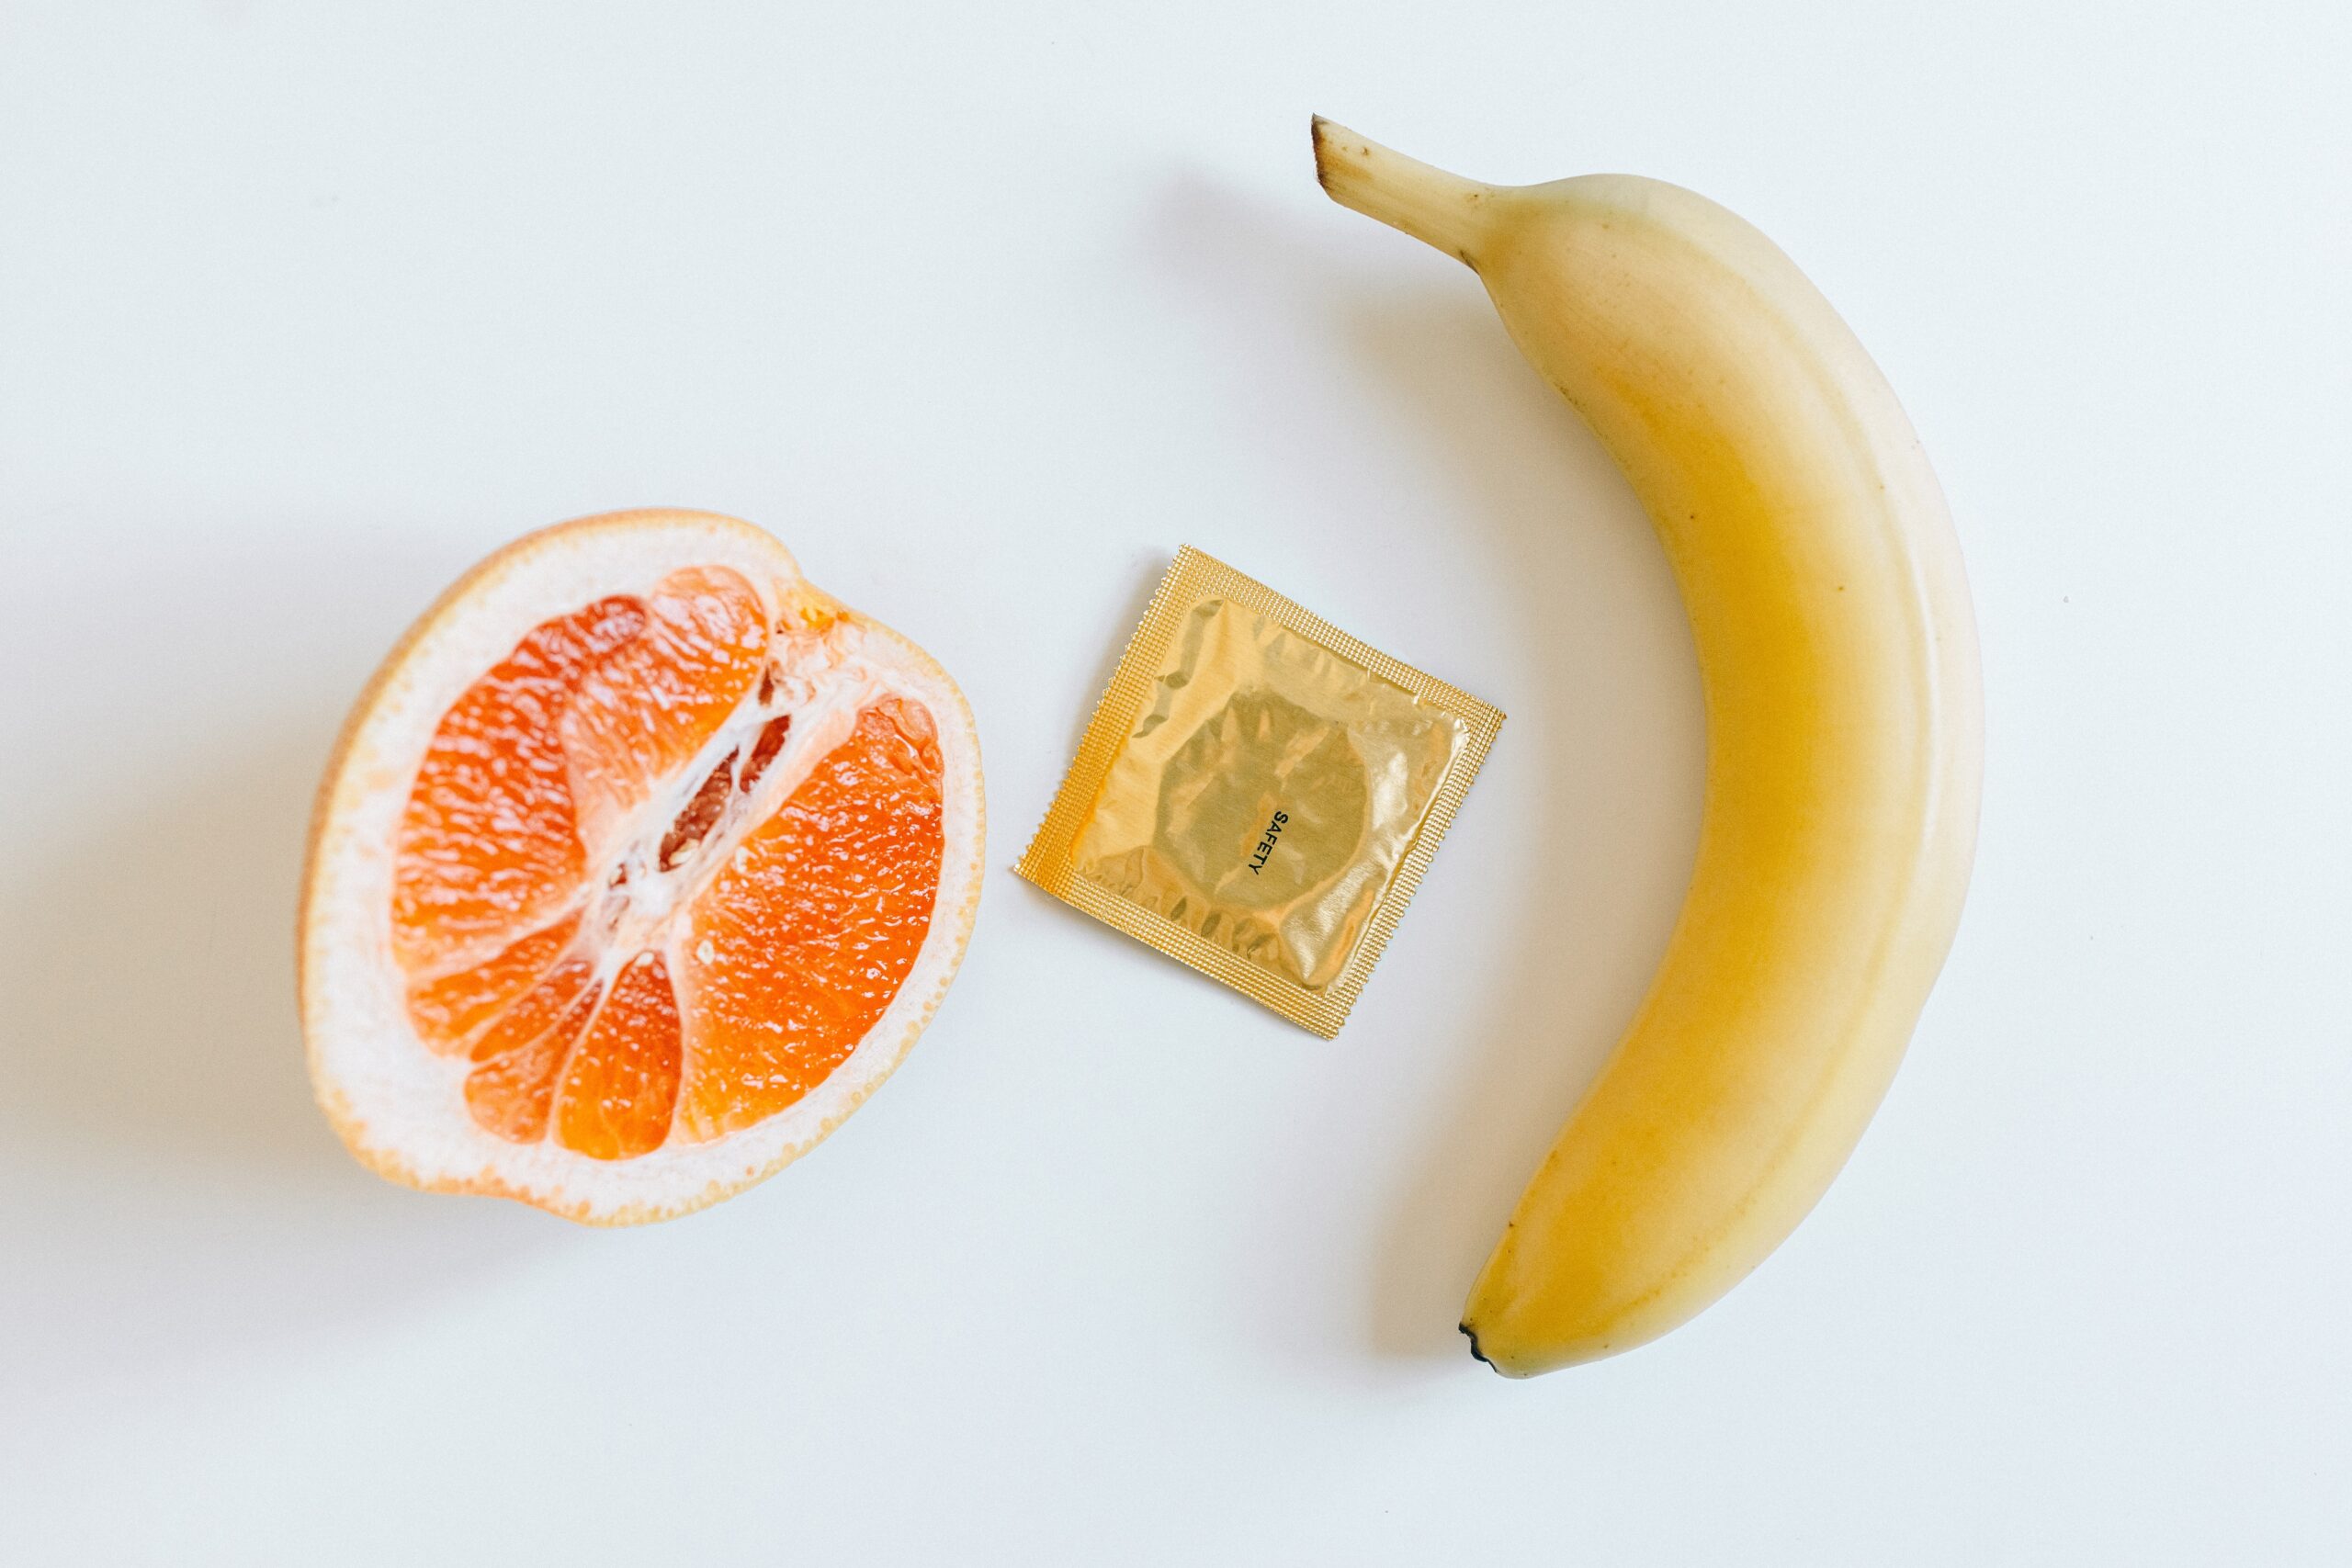 A Banana, Grapefruit And A Condom